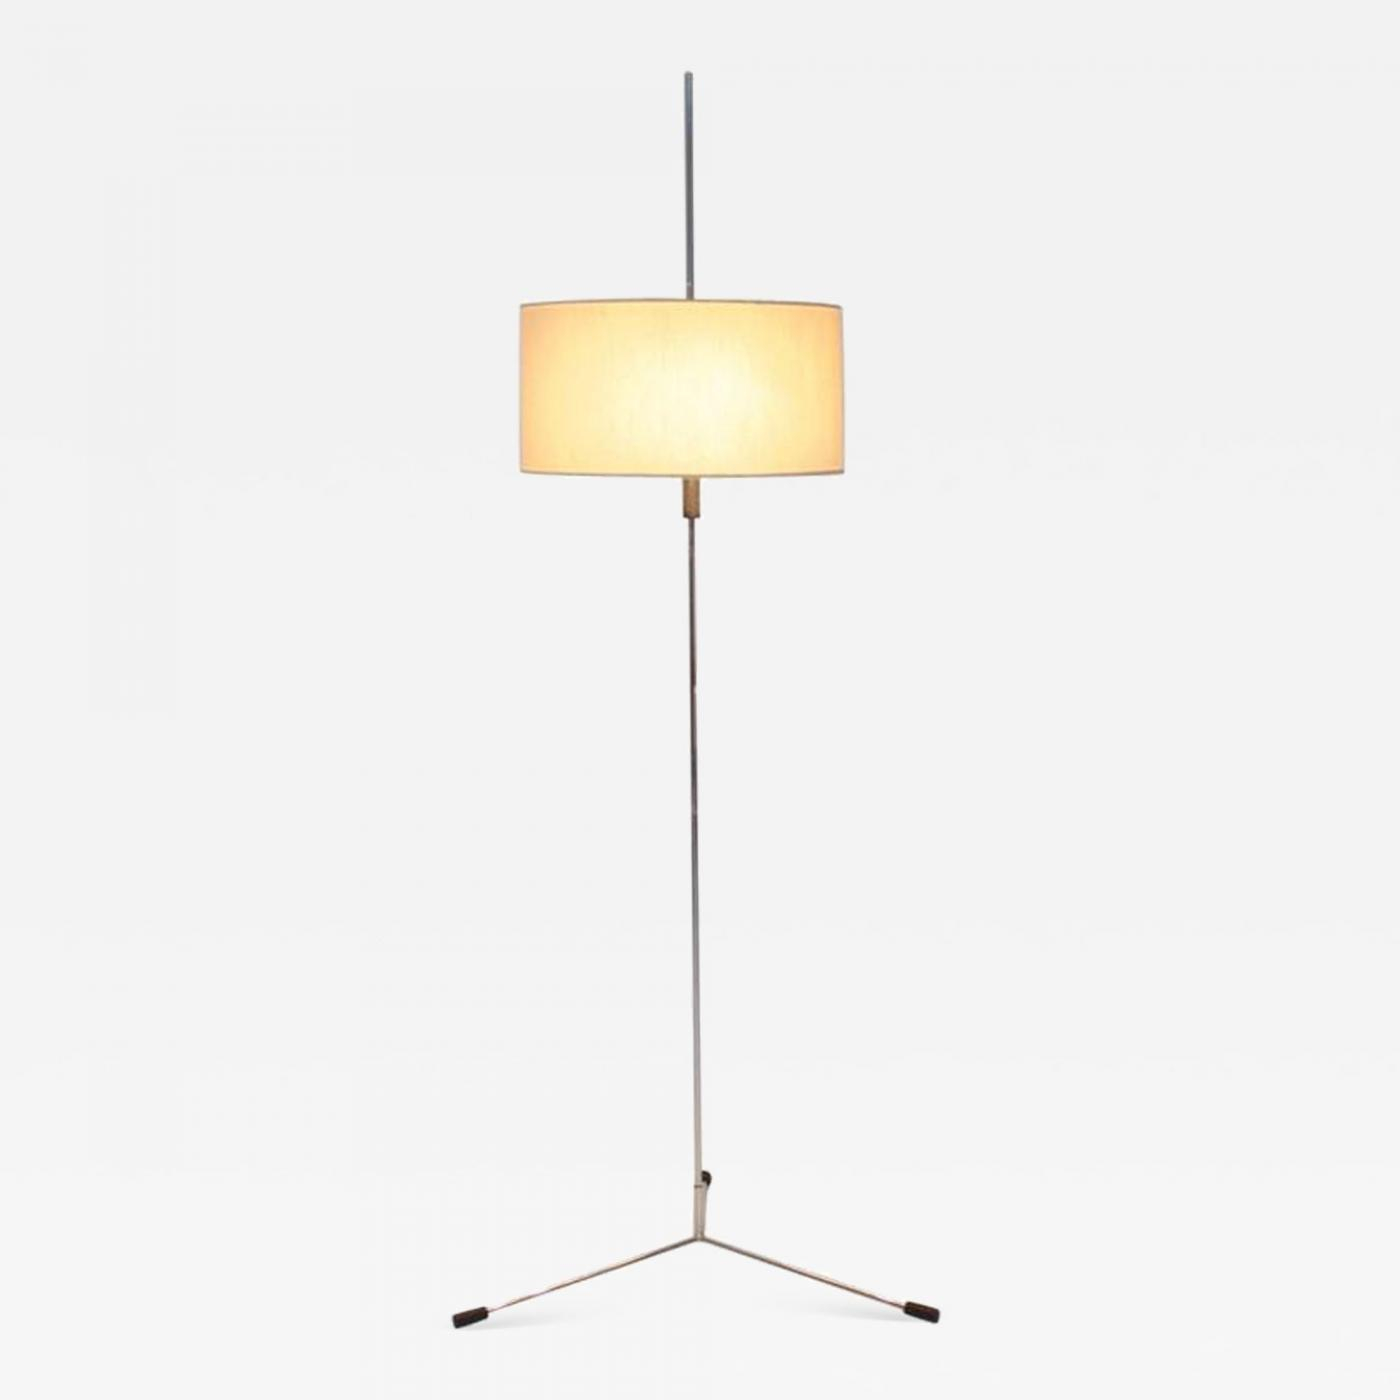 Knoll International Rare Floor Lamp Ruser Kuntner For Knoll Int 1960s regarding dimensions 1400 X 1400